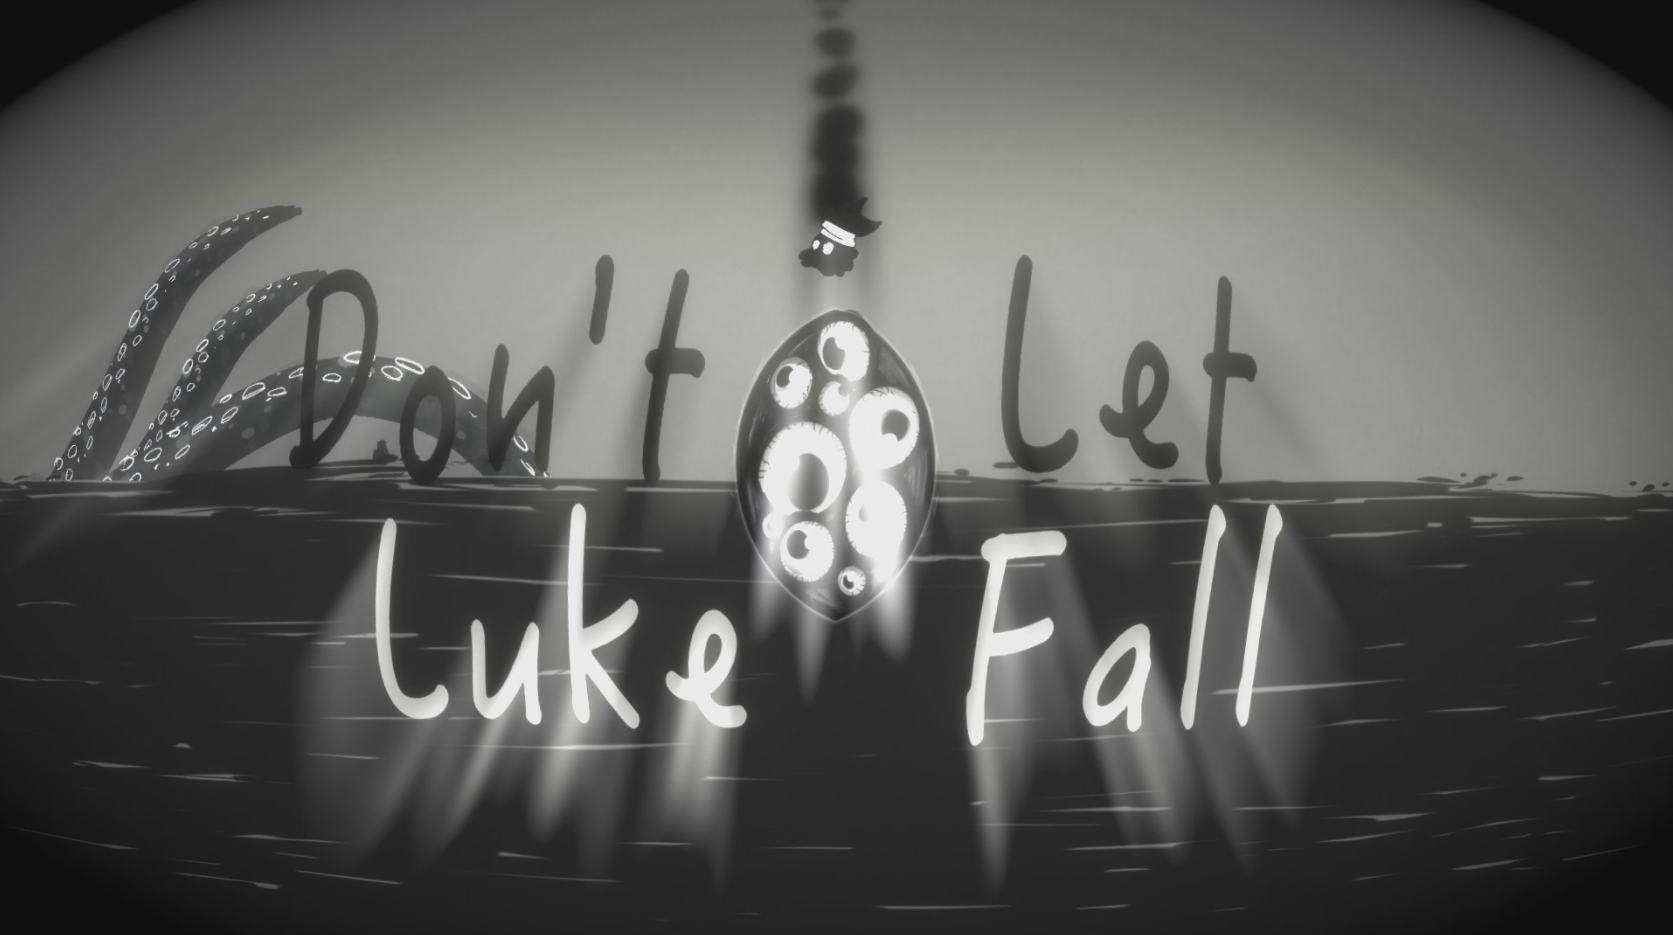 Don't Let Luke Fall